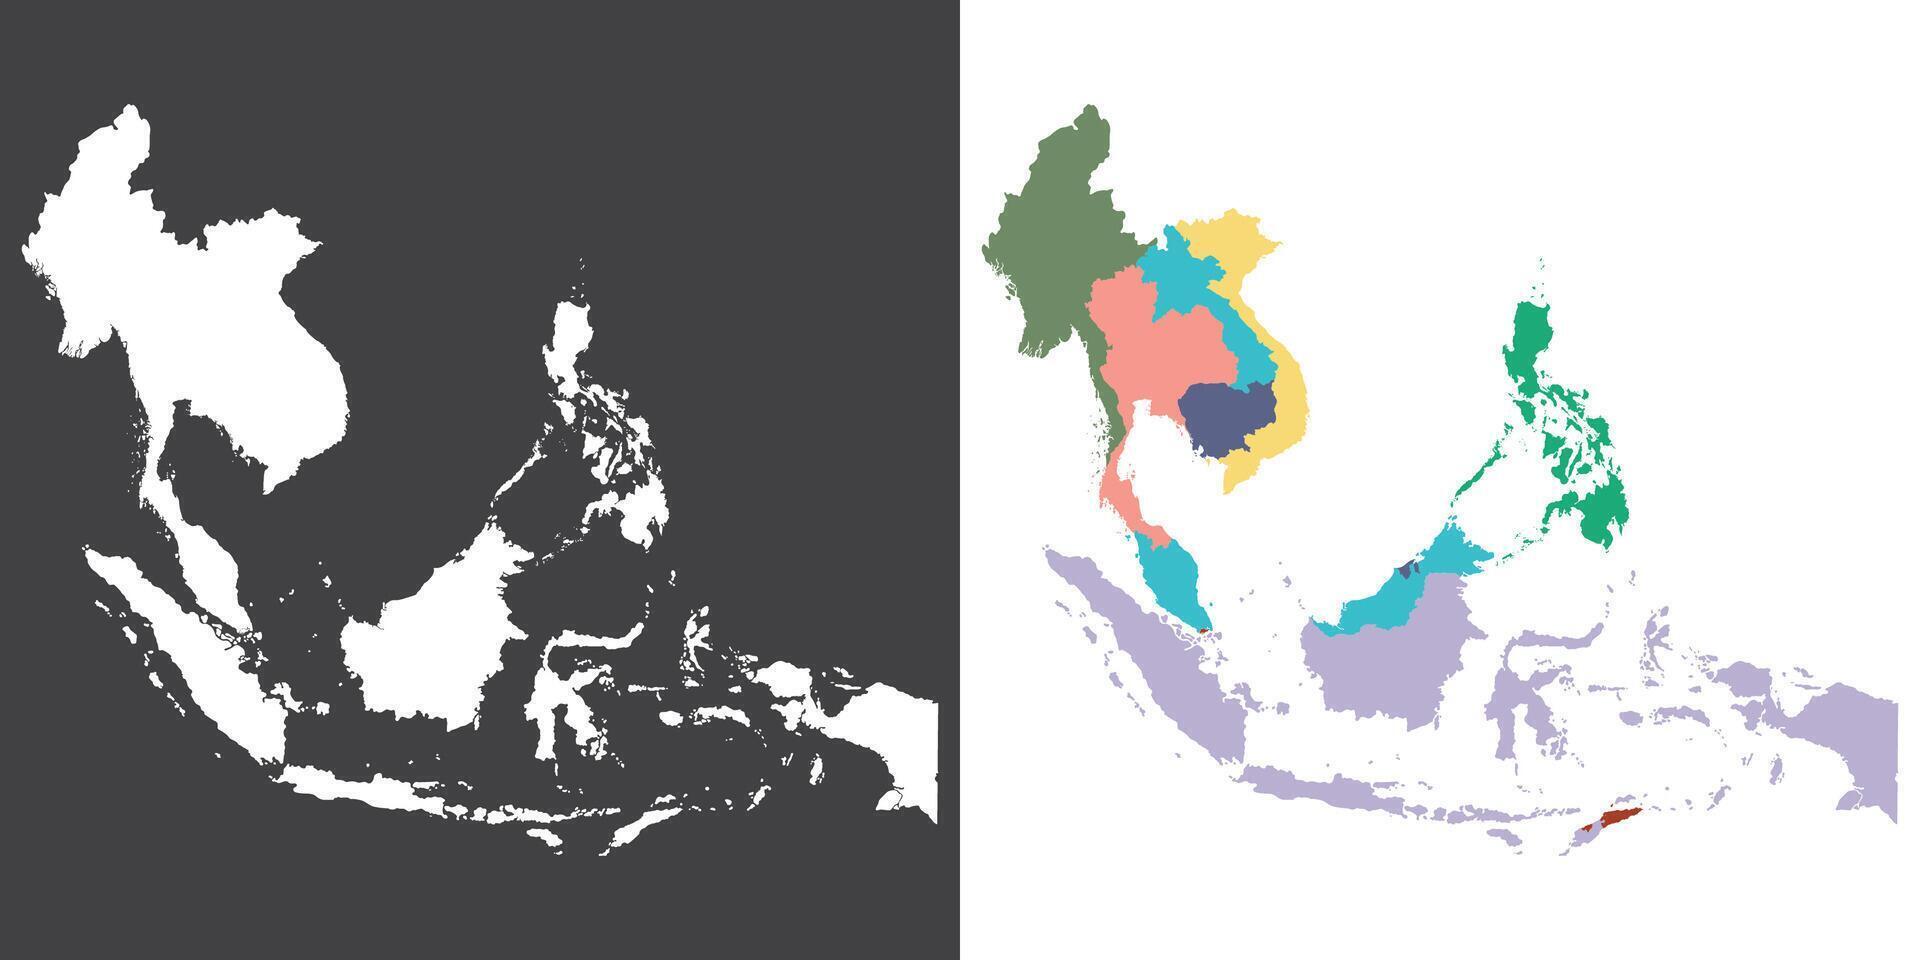 sud-est Asia nazione carta geografica. carta geografica di sud-est Asia nel multicolore. vettore